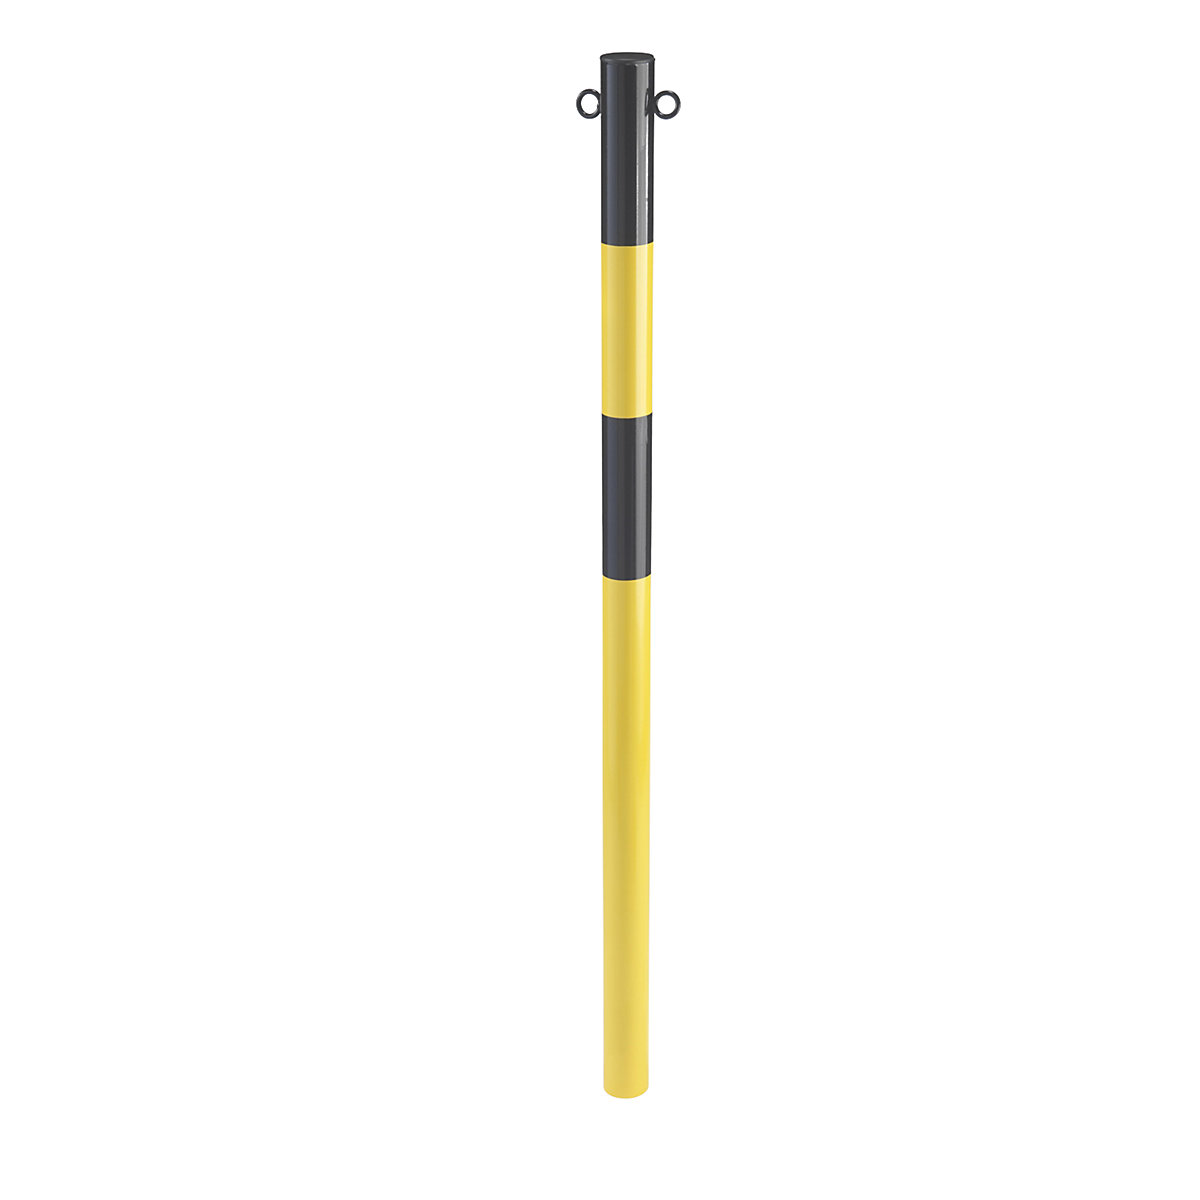 Sperrpfosten aus Stahlrohr, zum Einbetonieren, Ø 60 mm, gelb / schwarz, verzinkt und lackiert-4